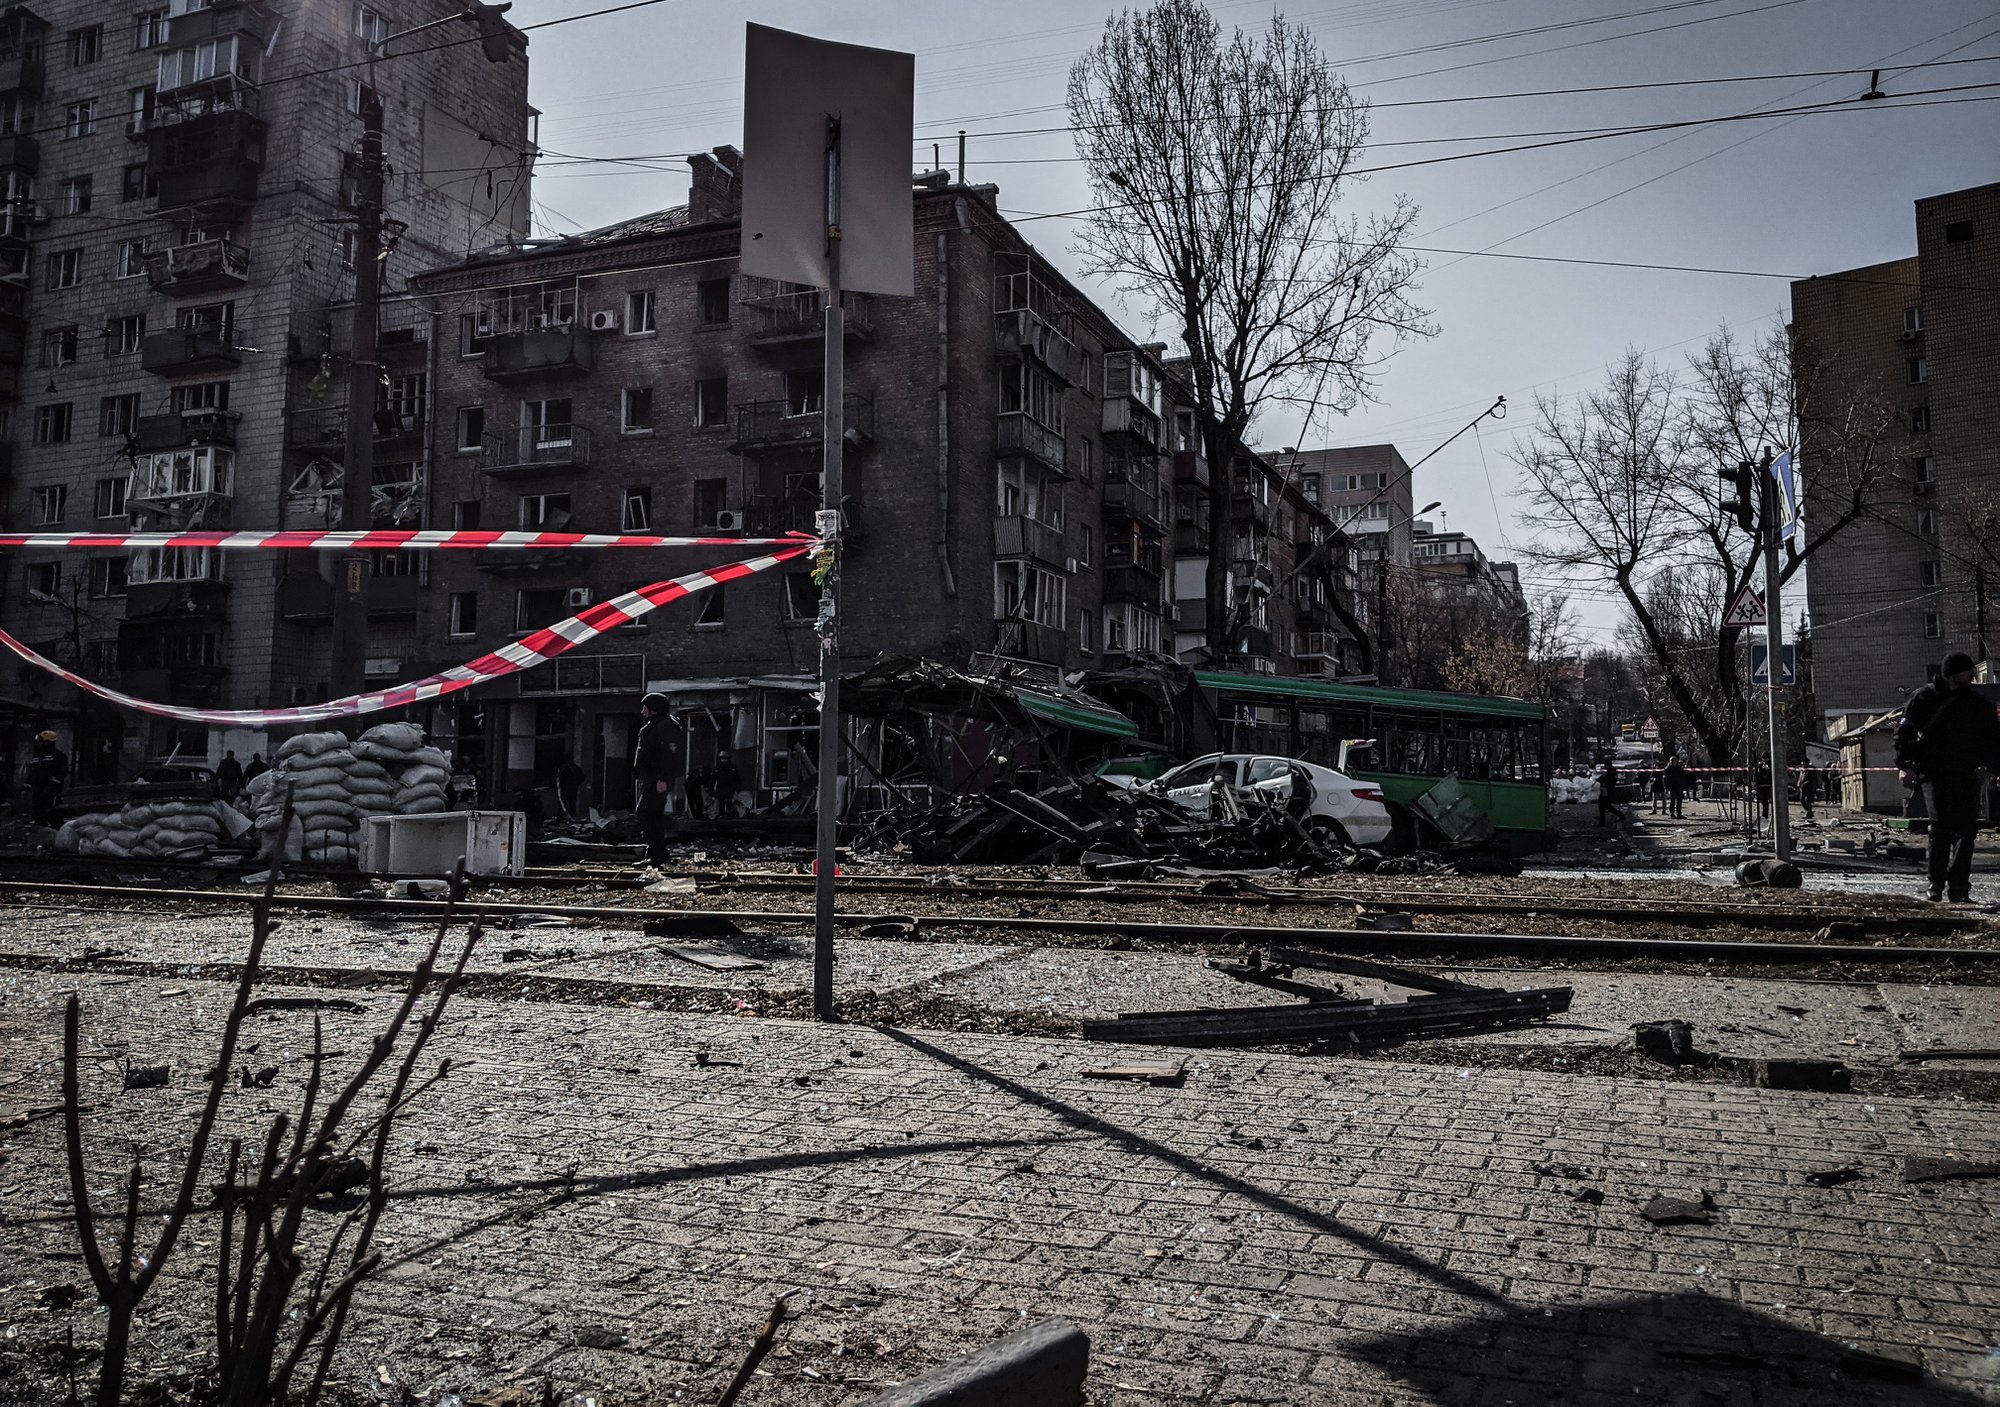 Oekraïne: mogelijke gevolgen voor financiële dienstverleners